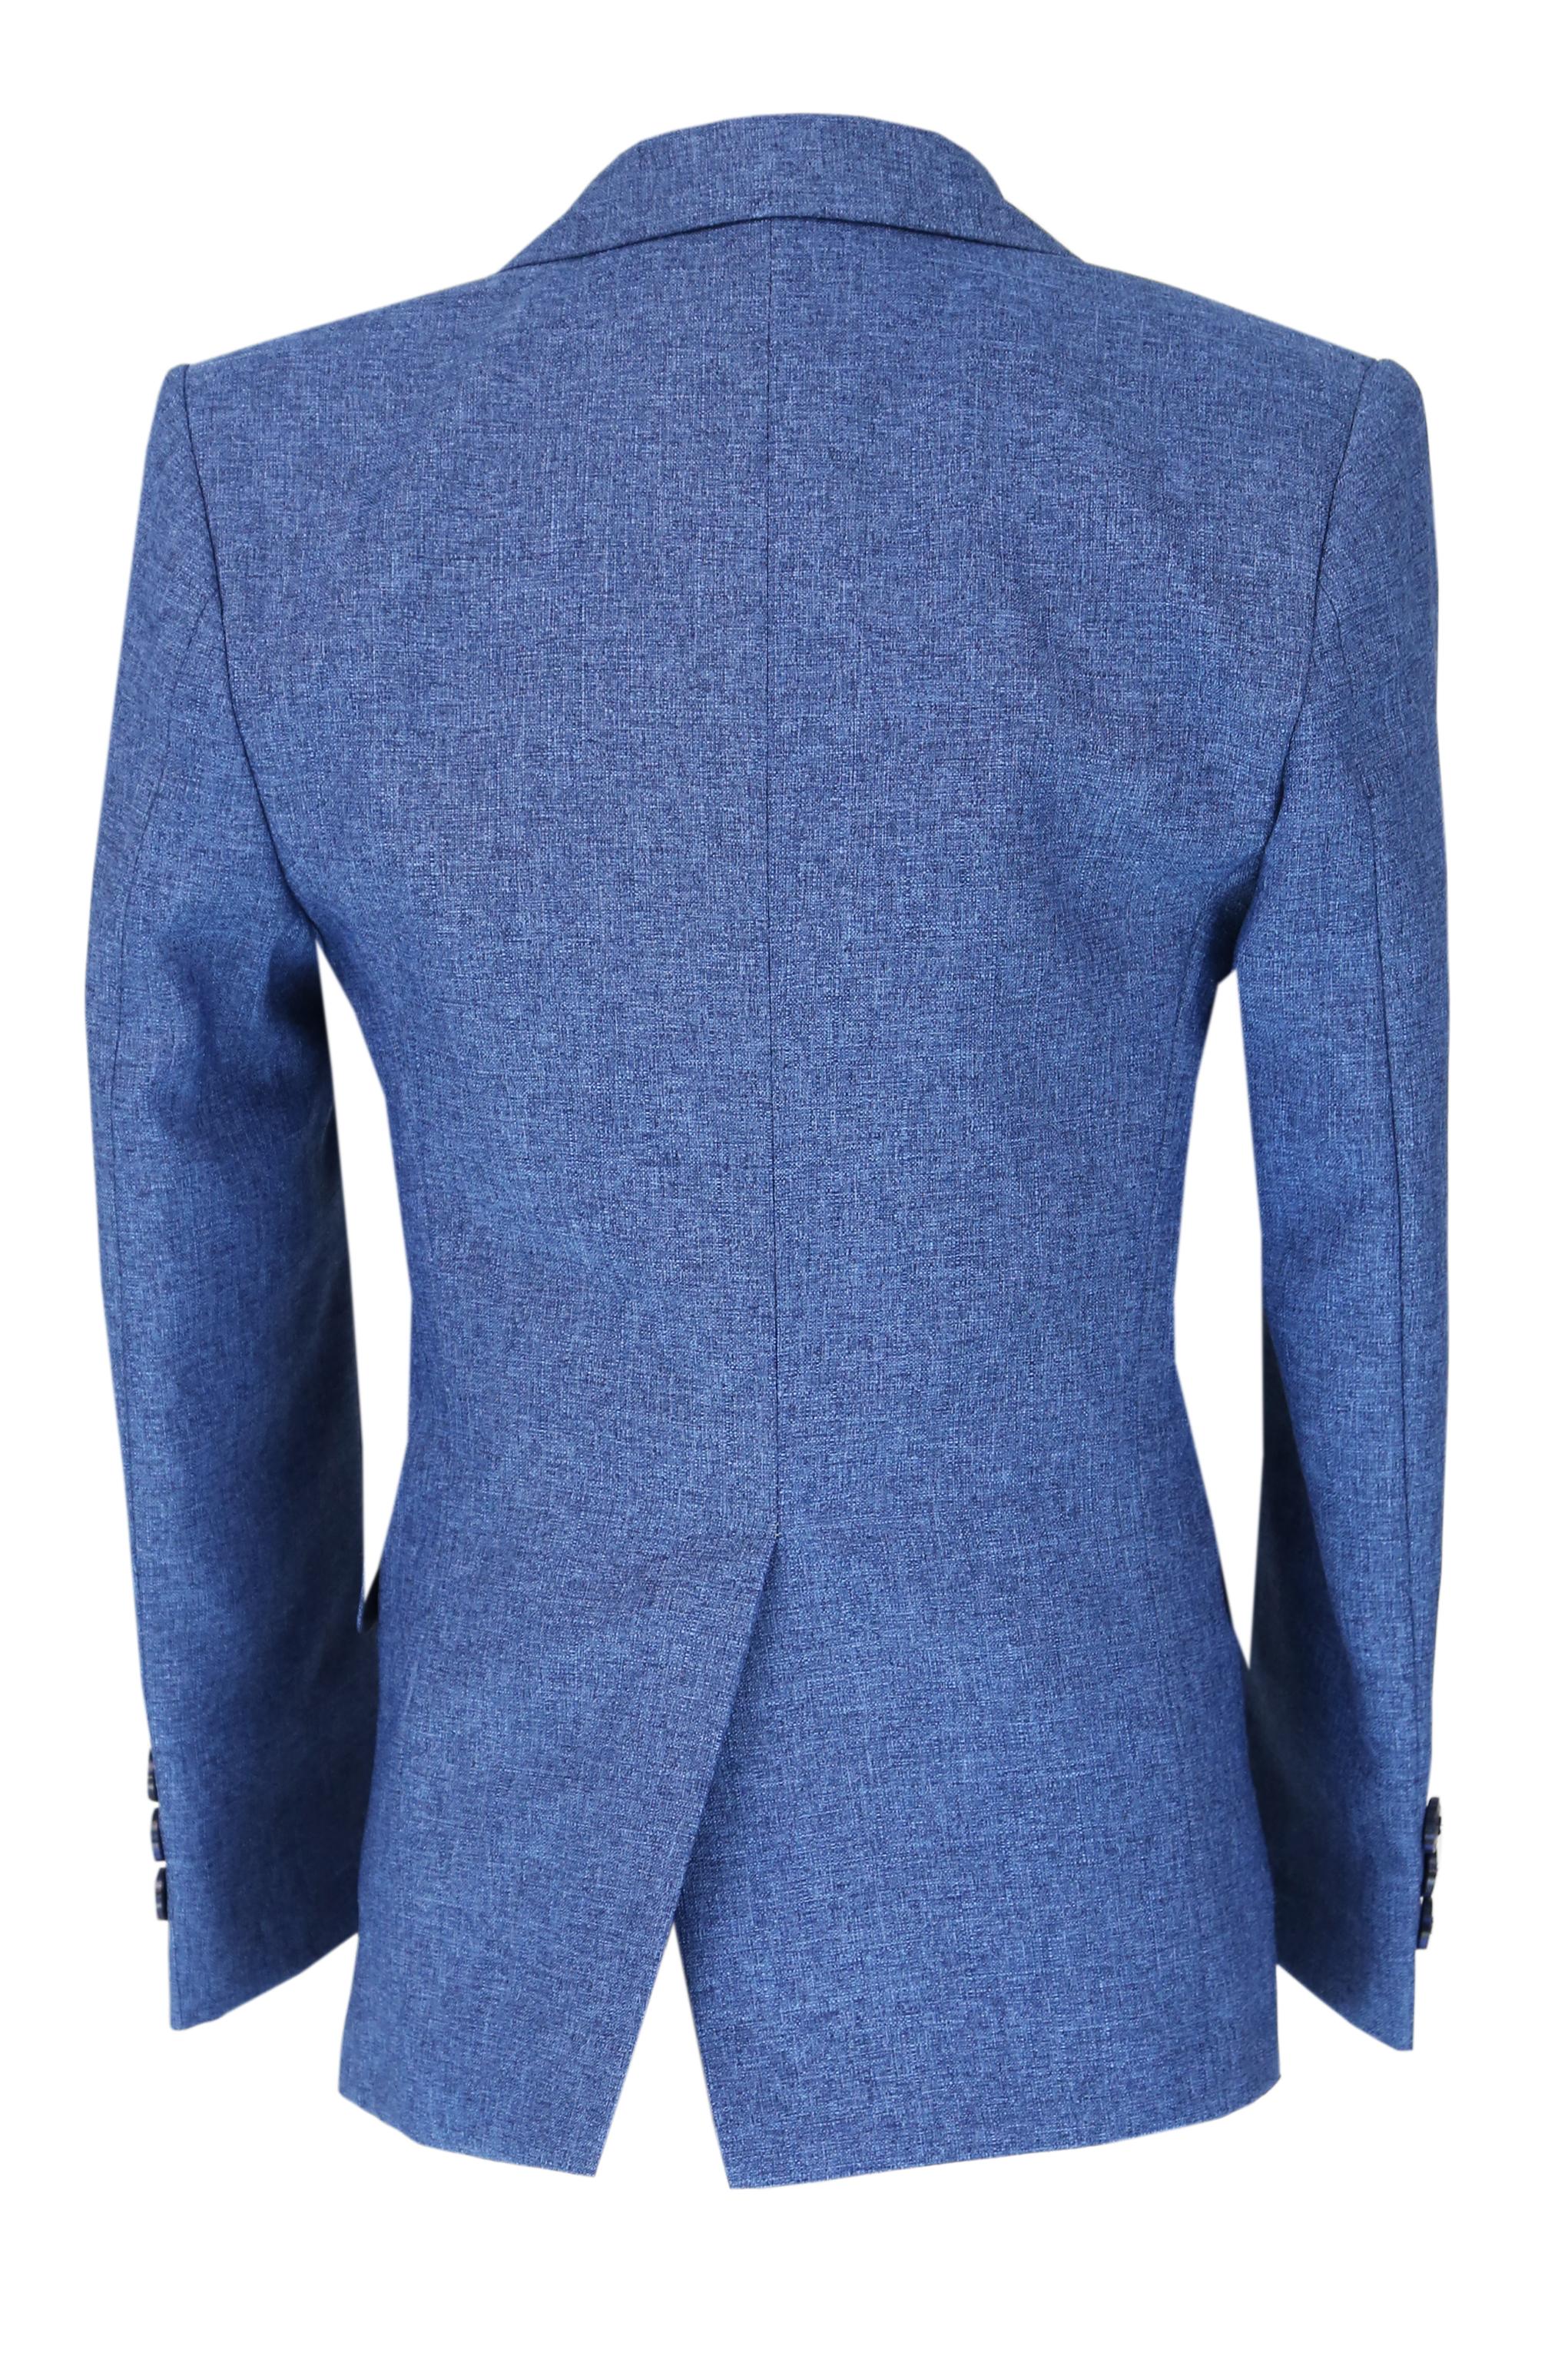 Boys Slim Fit Textured 6-Piece Formal Suit Set - Blue